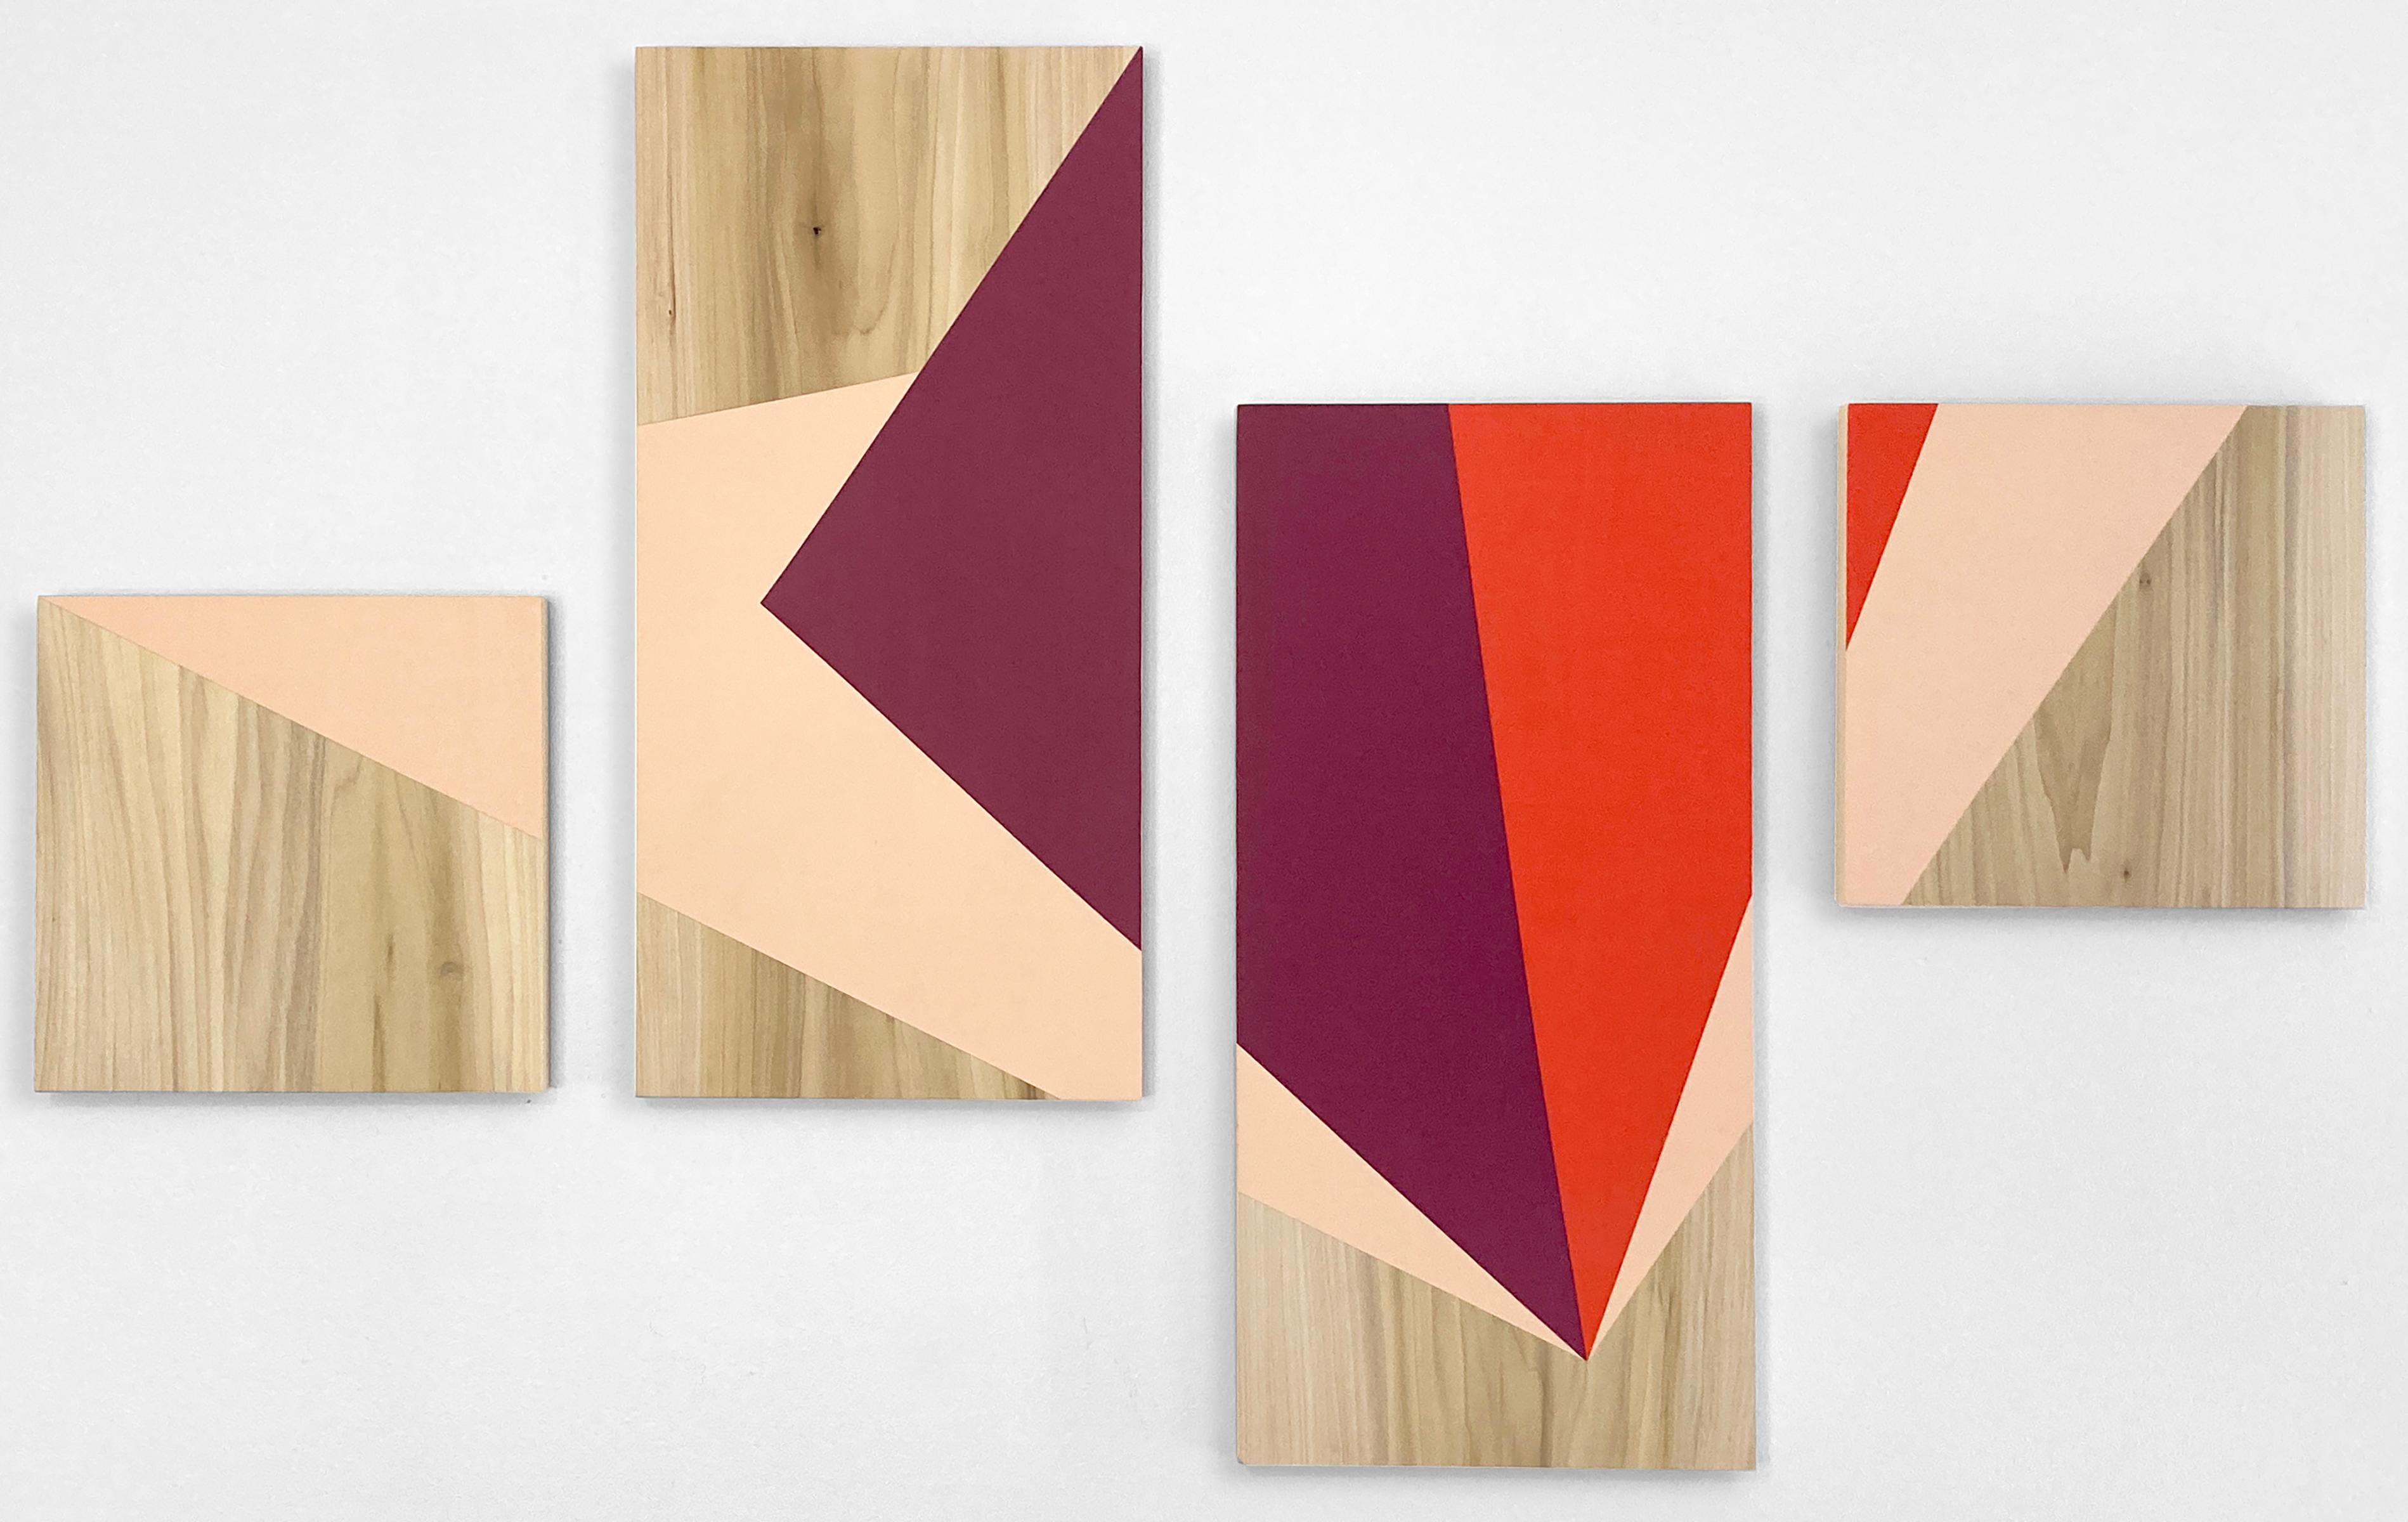 'Apex' - colorful minimalist work on panel - wood grain - Carmen Herrera